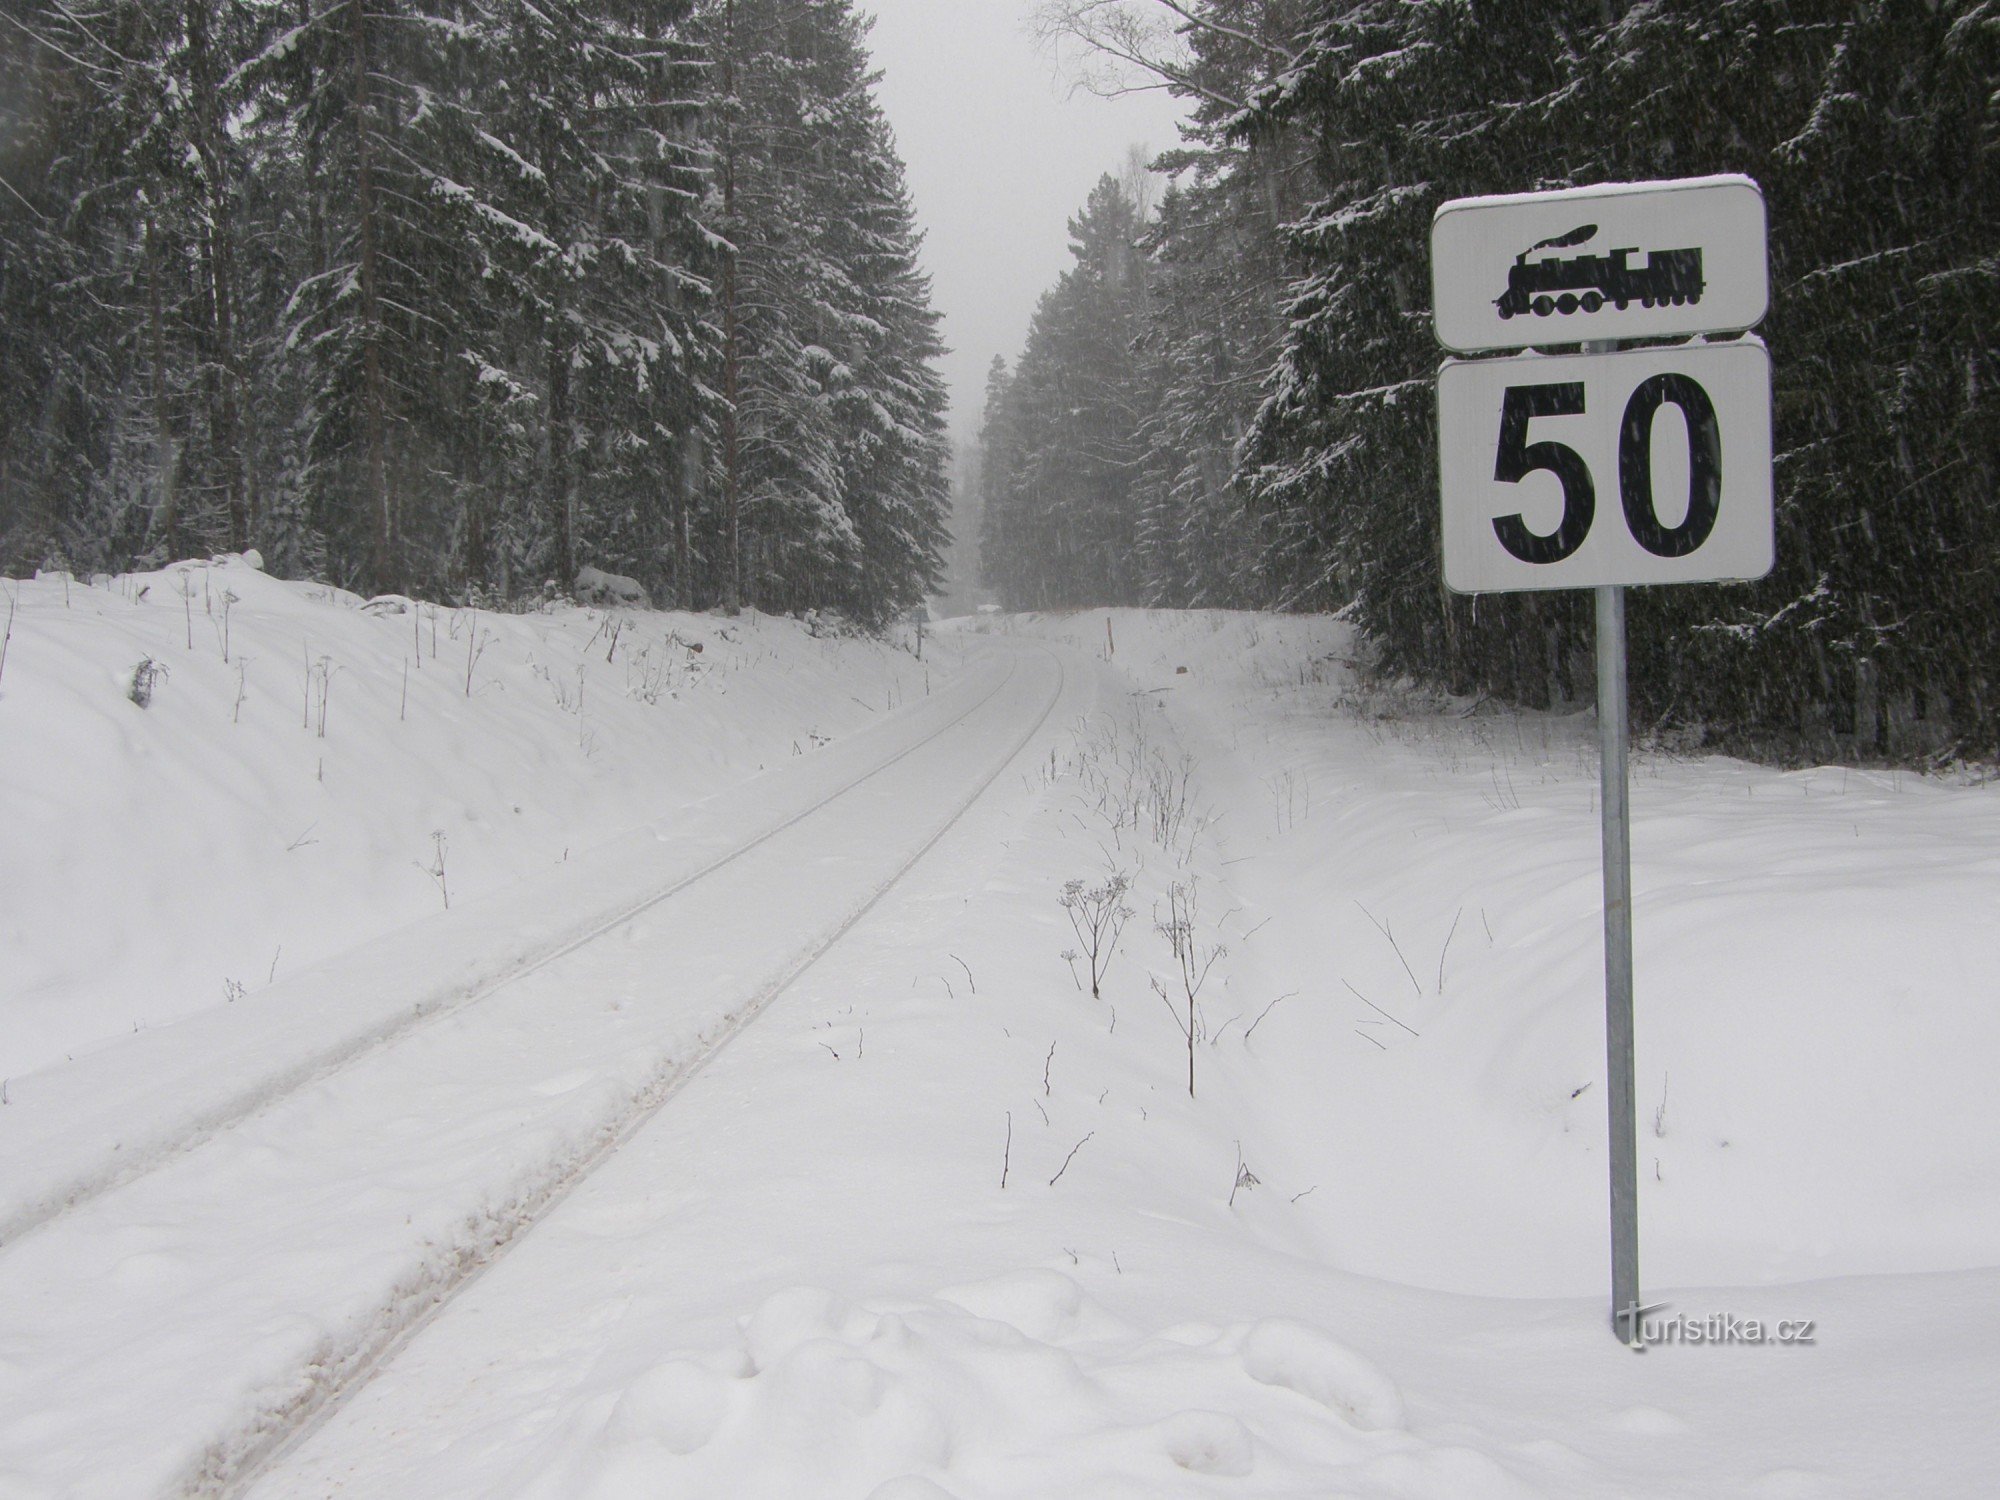 Сліди прямують крізь сніг до баварського кордону